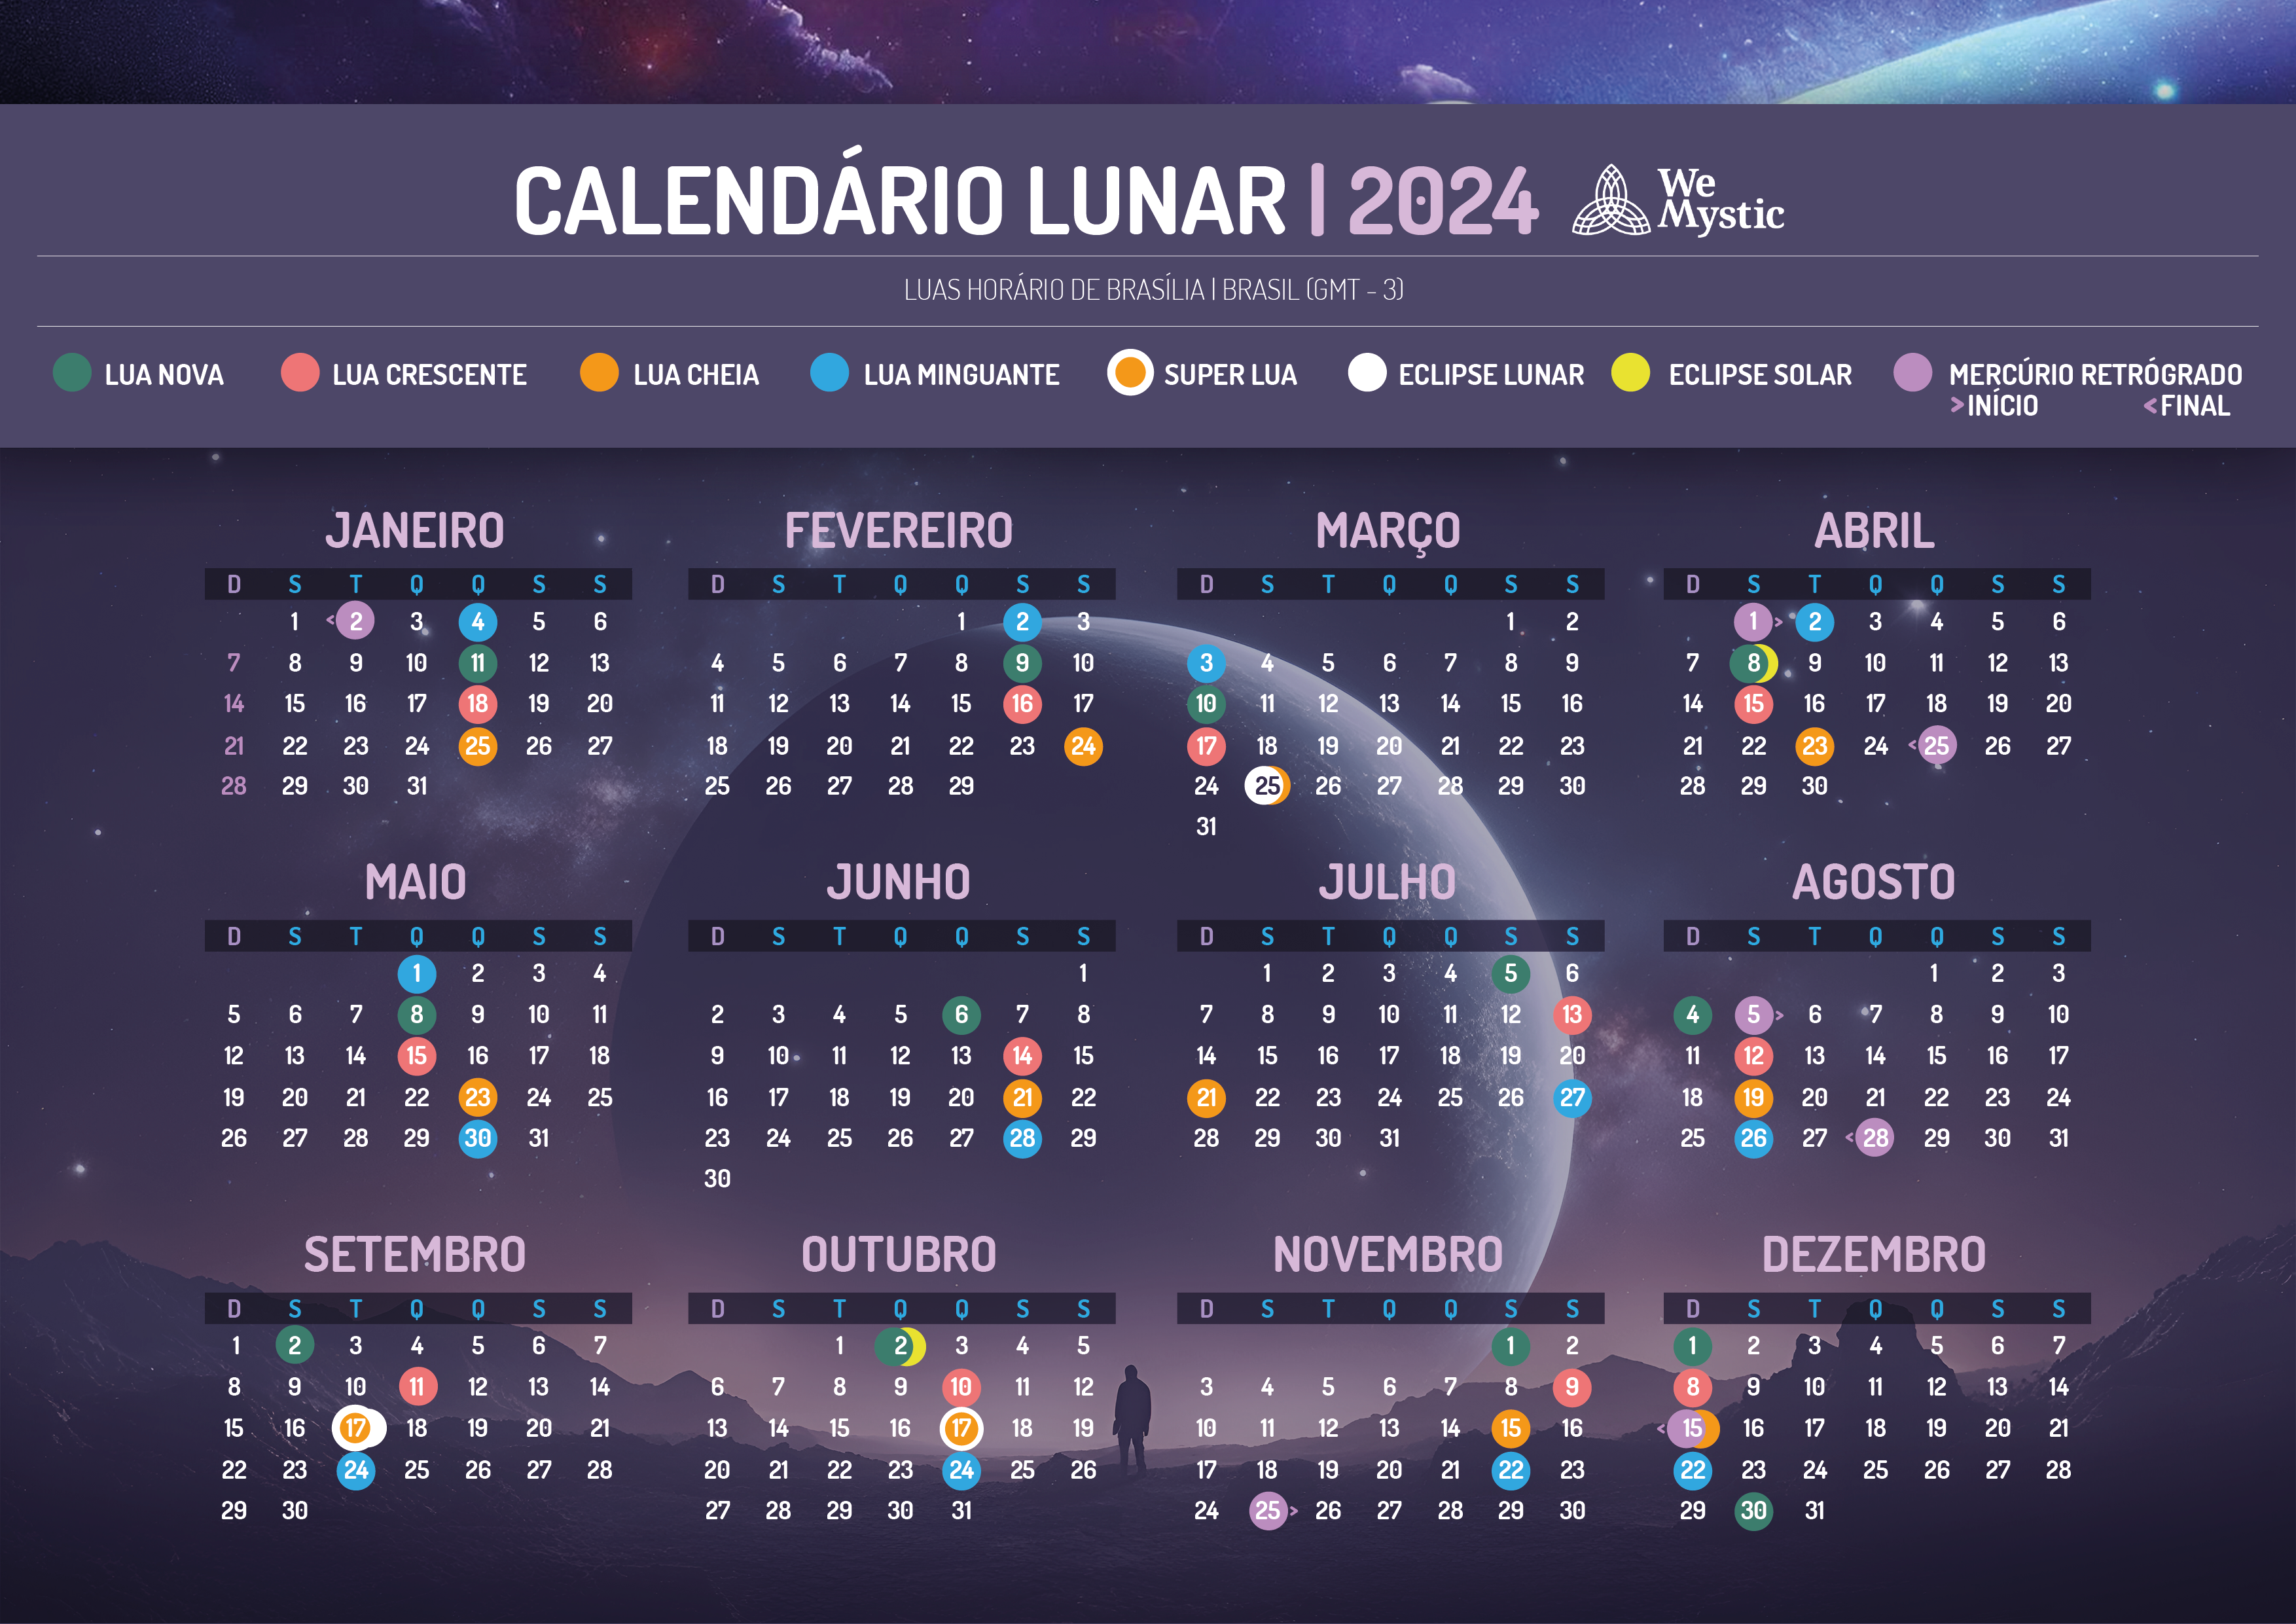 Calendário lunar de Novembro 2023: 5 sites para ver as fases da